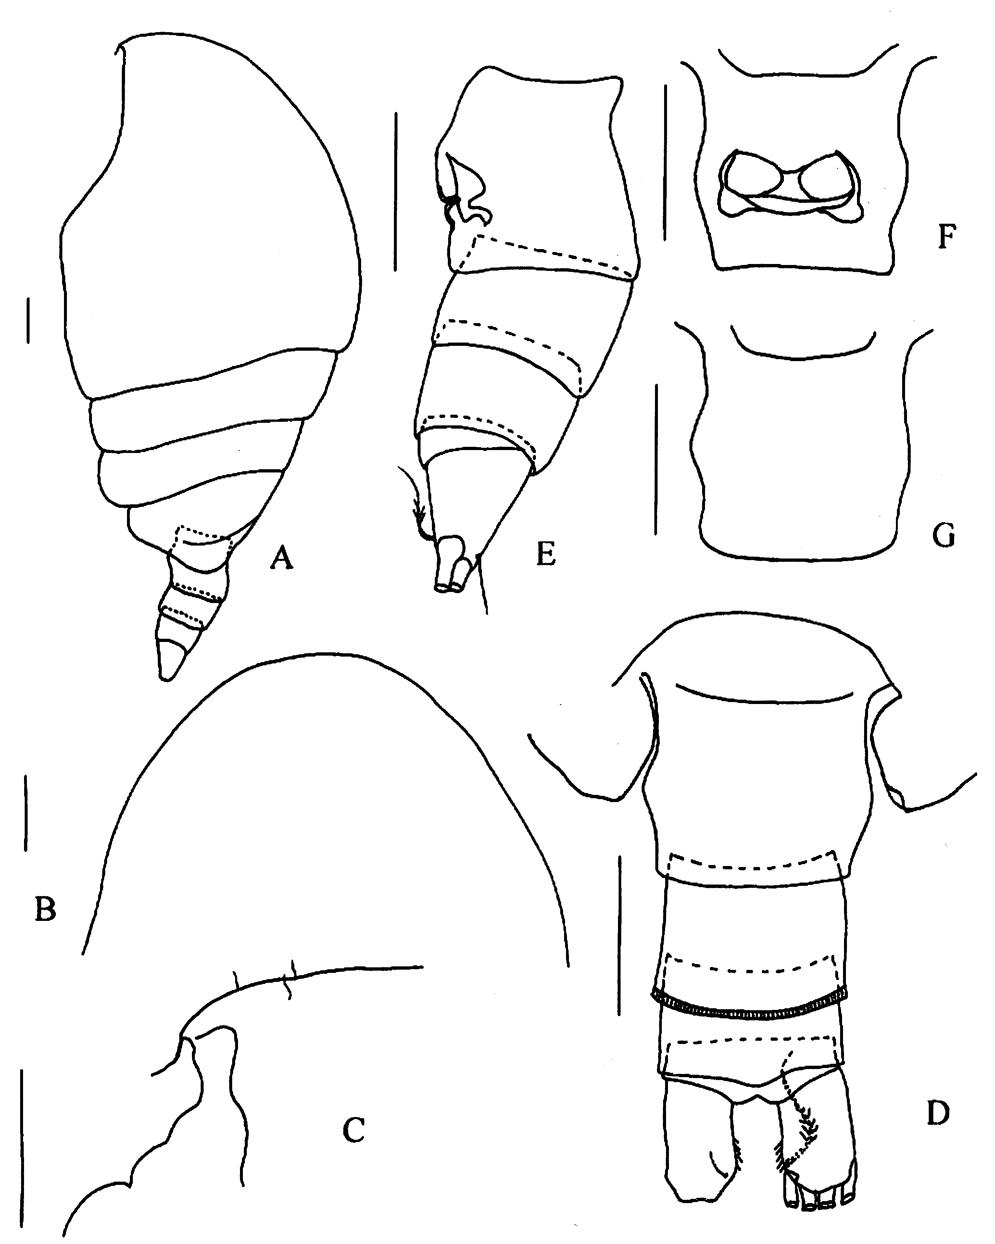 Espèce Tharybis pseudomegalodactyla - Planche 1 de figures morphologiques